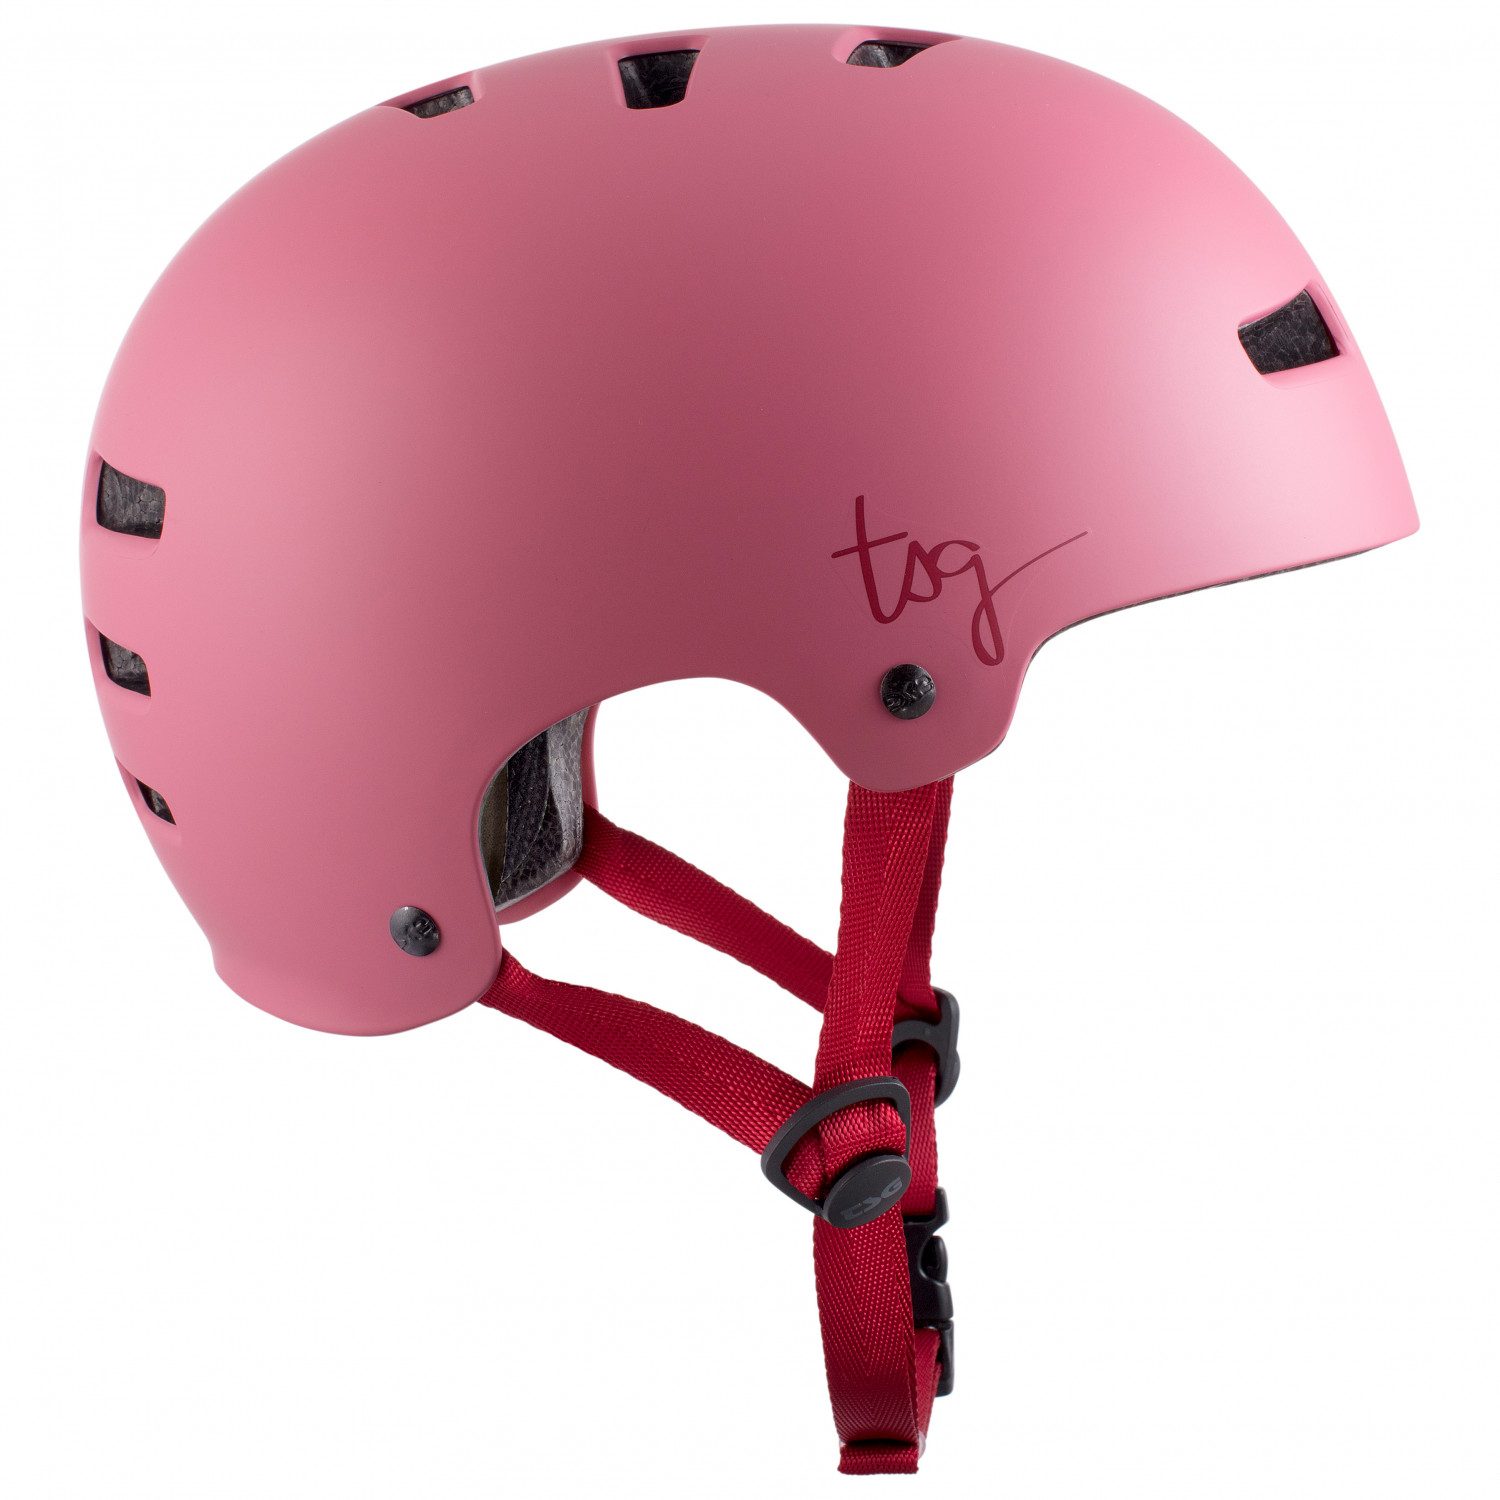 Велосипедный шлем Tsg Women's Evolution Solid Color, цвет Satin Sakura